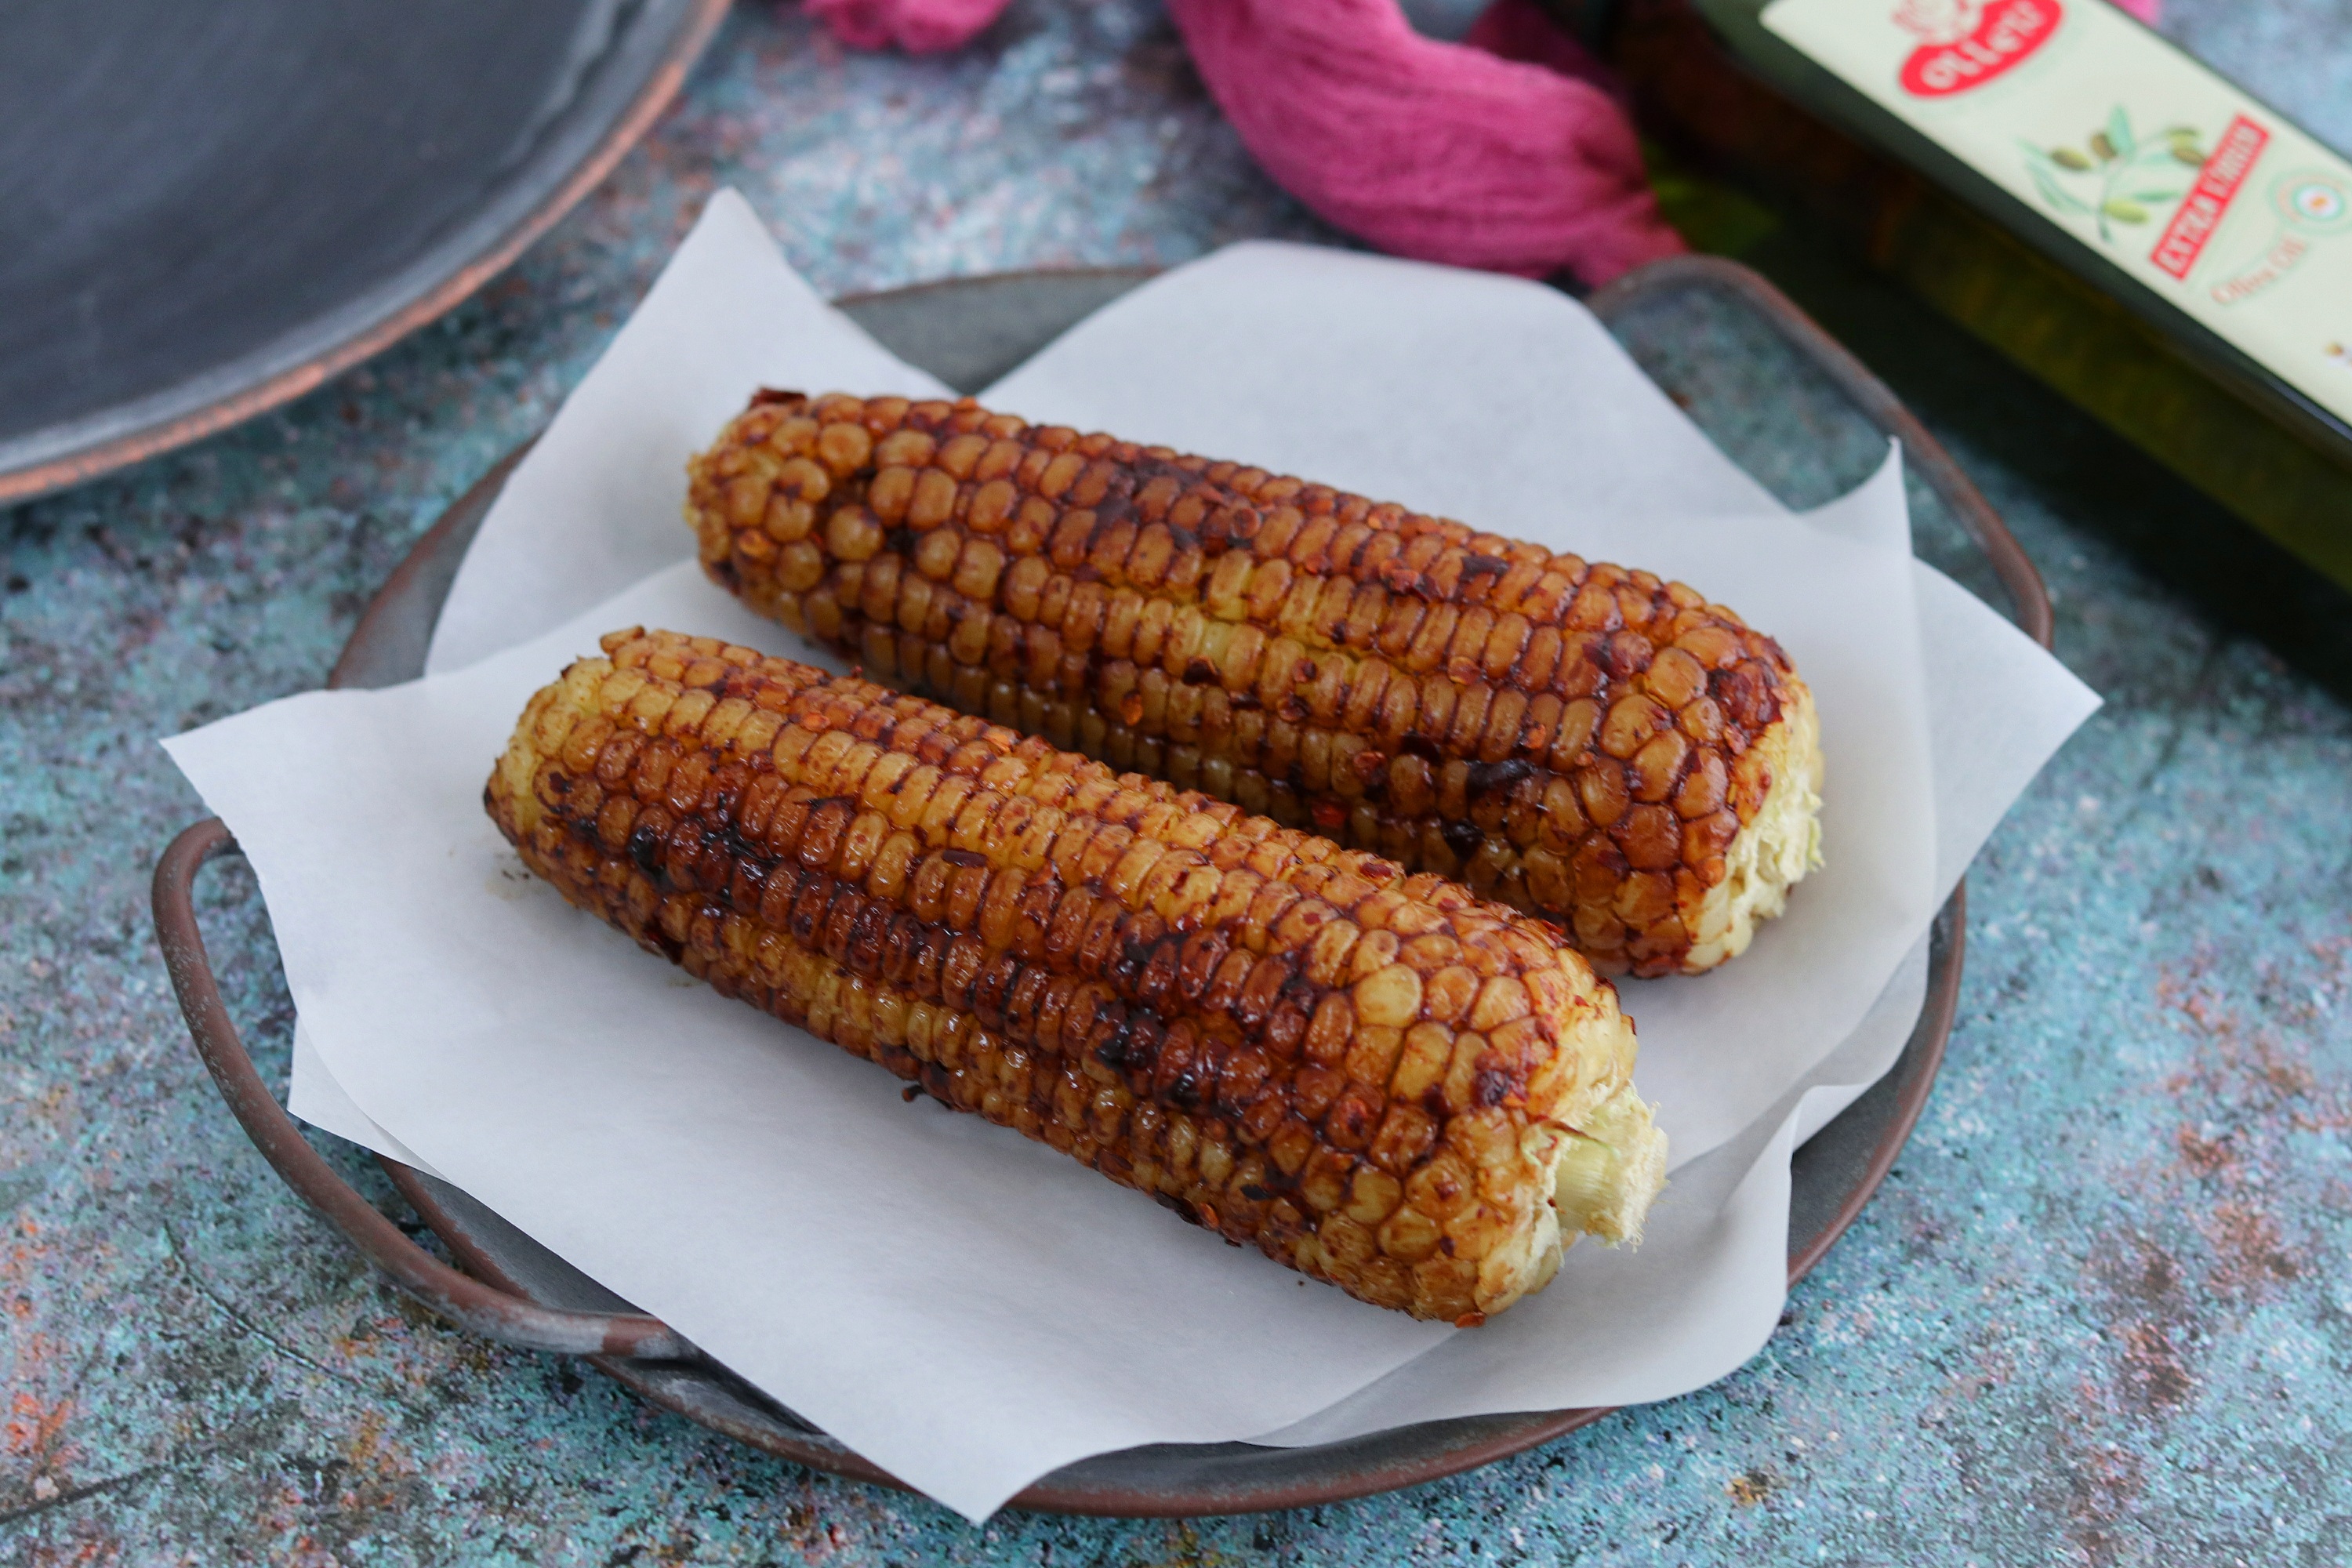 玉米怎么做最好吃？